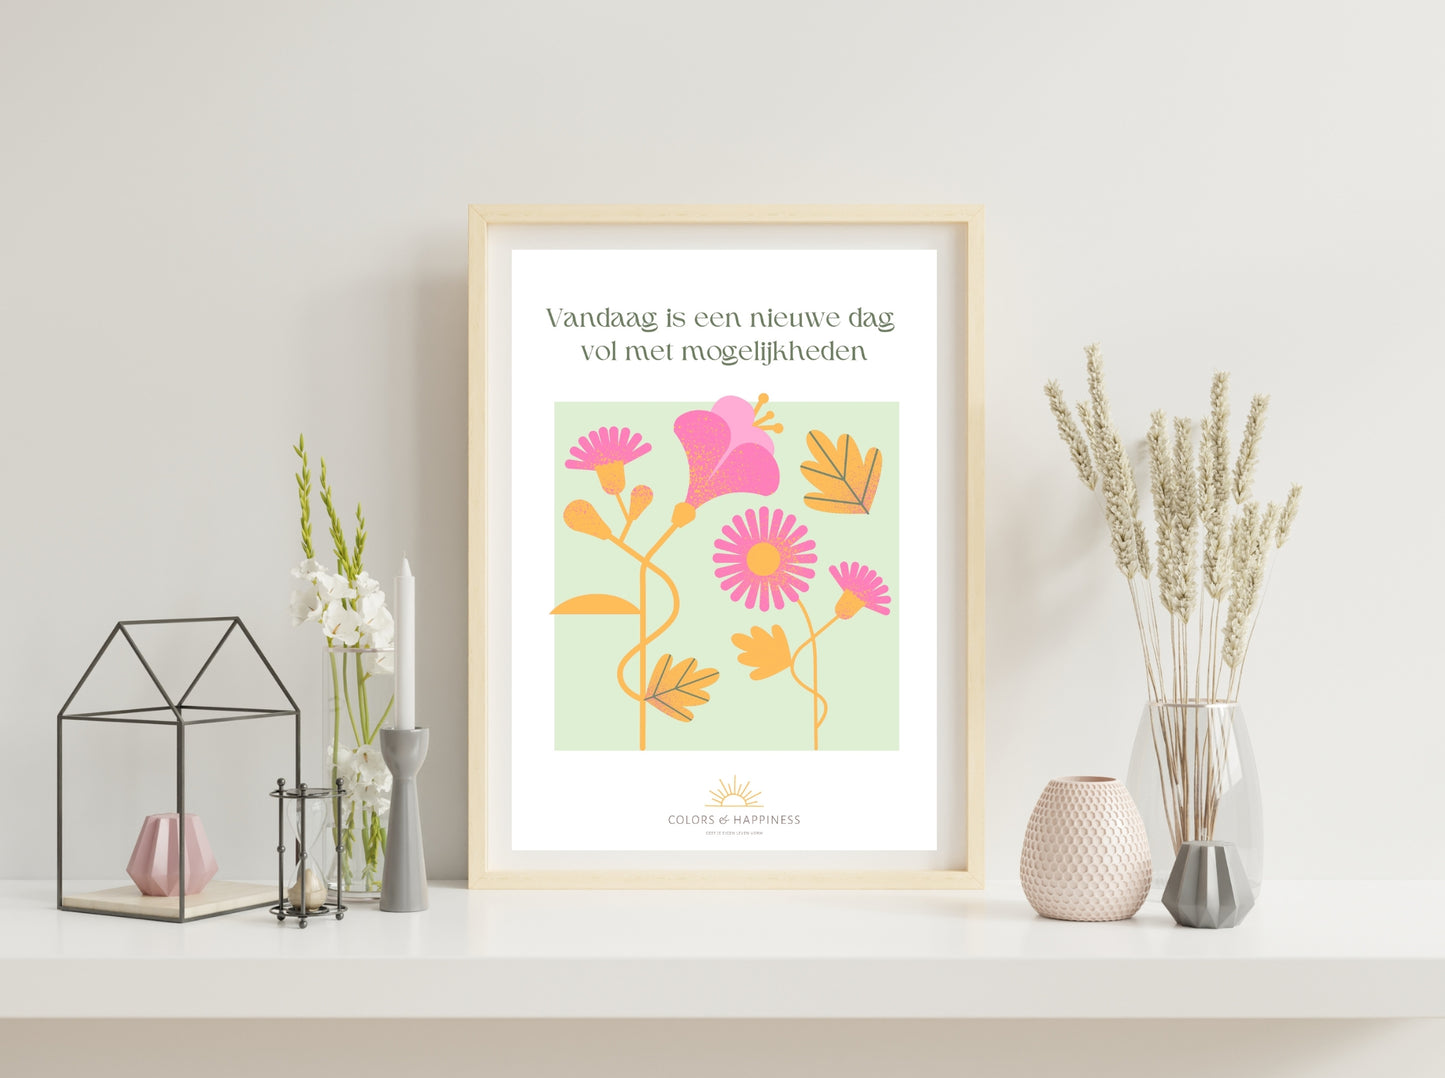 Inspirerende poster met quote "Vandaag is..." en bloemen illustratie, digitale download voor een bewuster leven